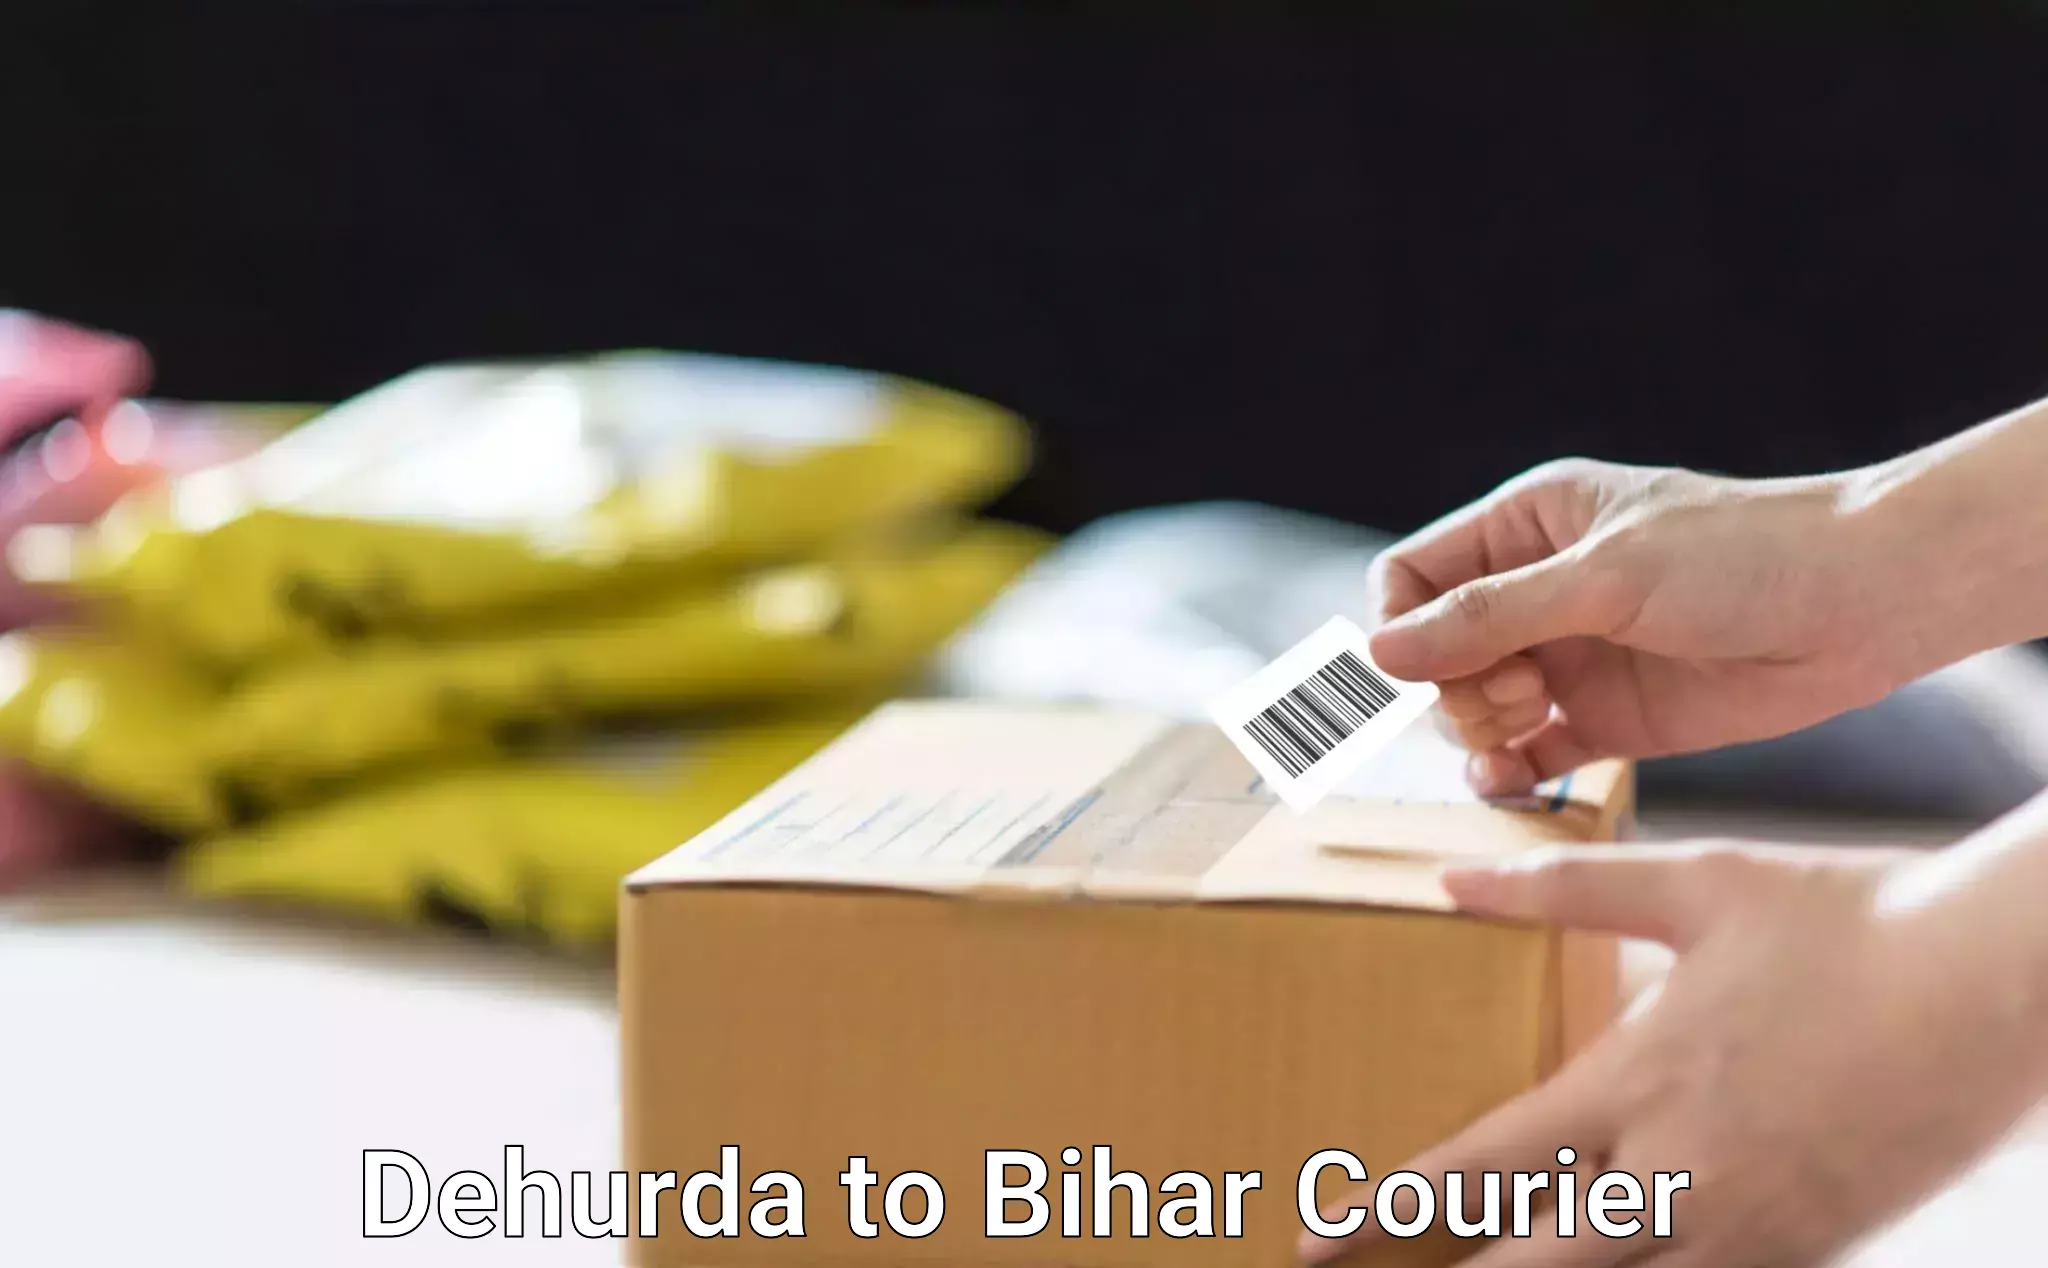 Reliable shipping solutions Dehurda to Sudhani